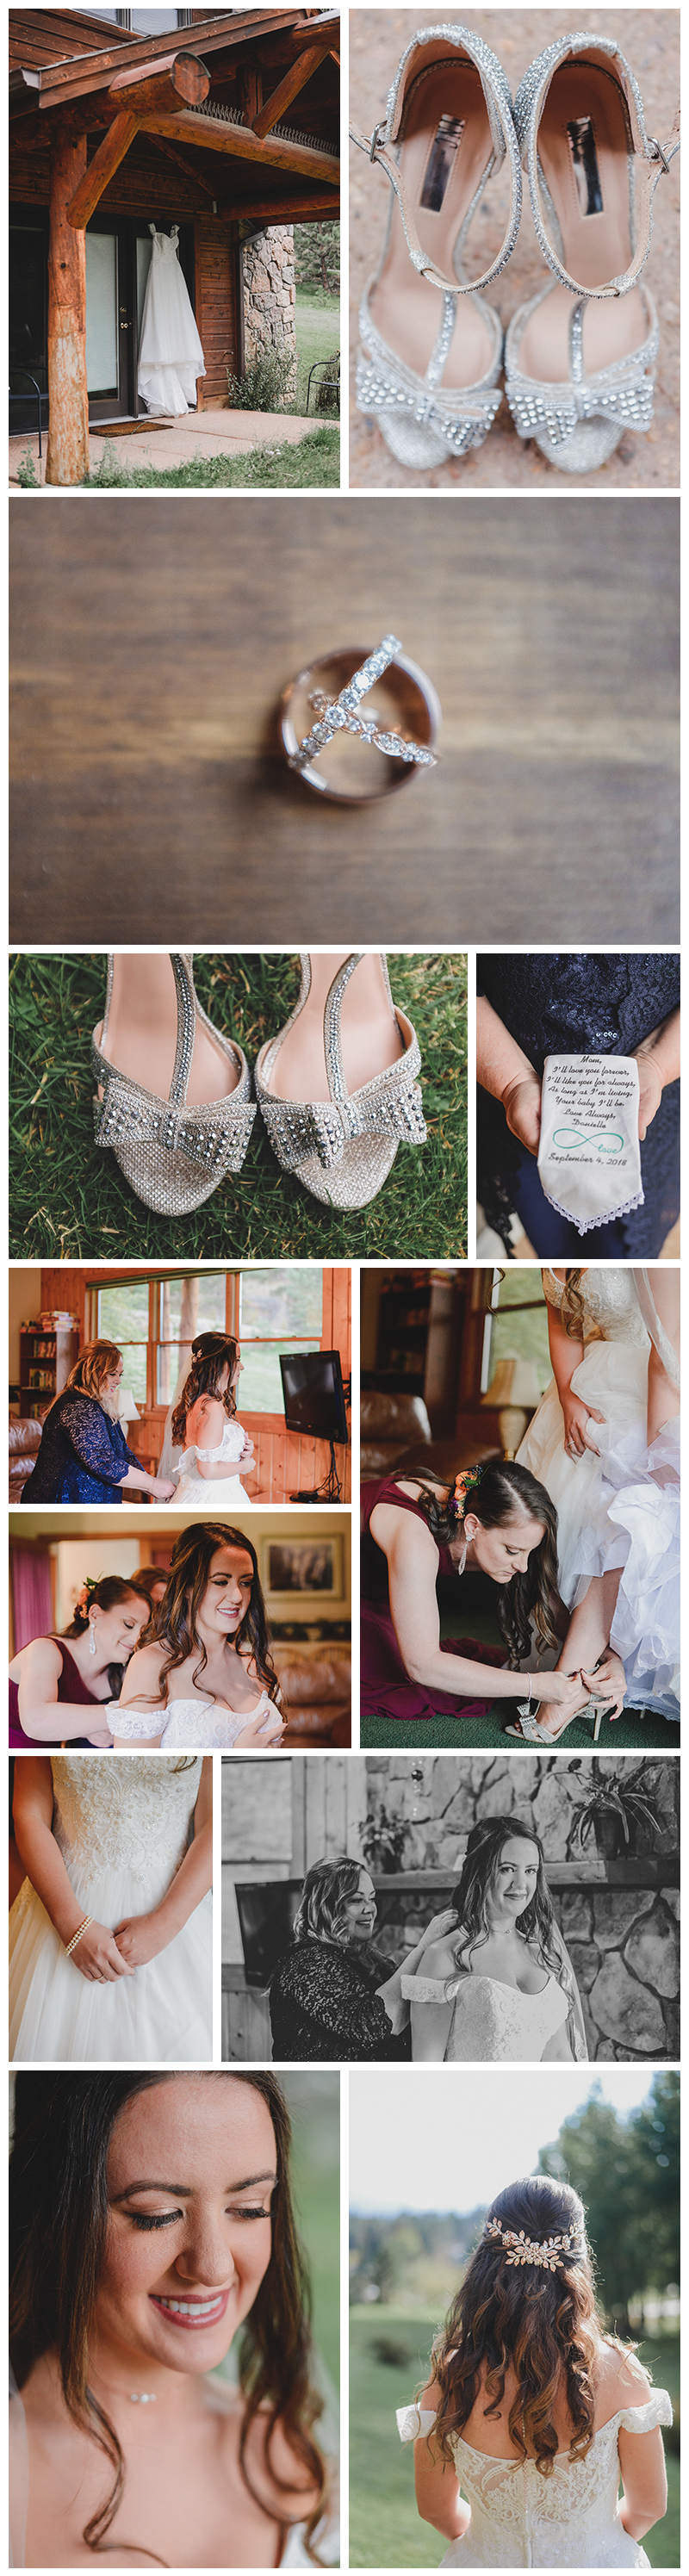 Estes Park Wedding Photography - Black Cayon Inn Wedding Photography - Twin Owls Steakhouse Wedding Photography - Rocky Mountain Wedding Photography 